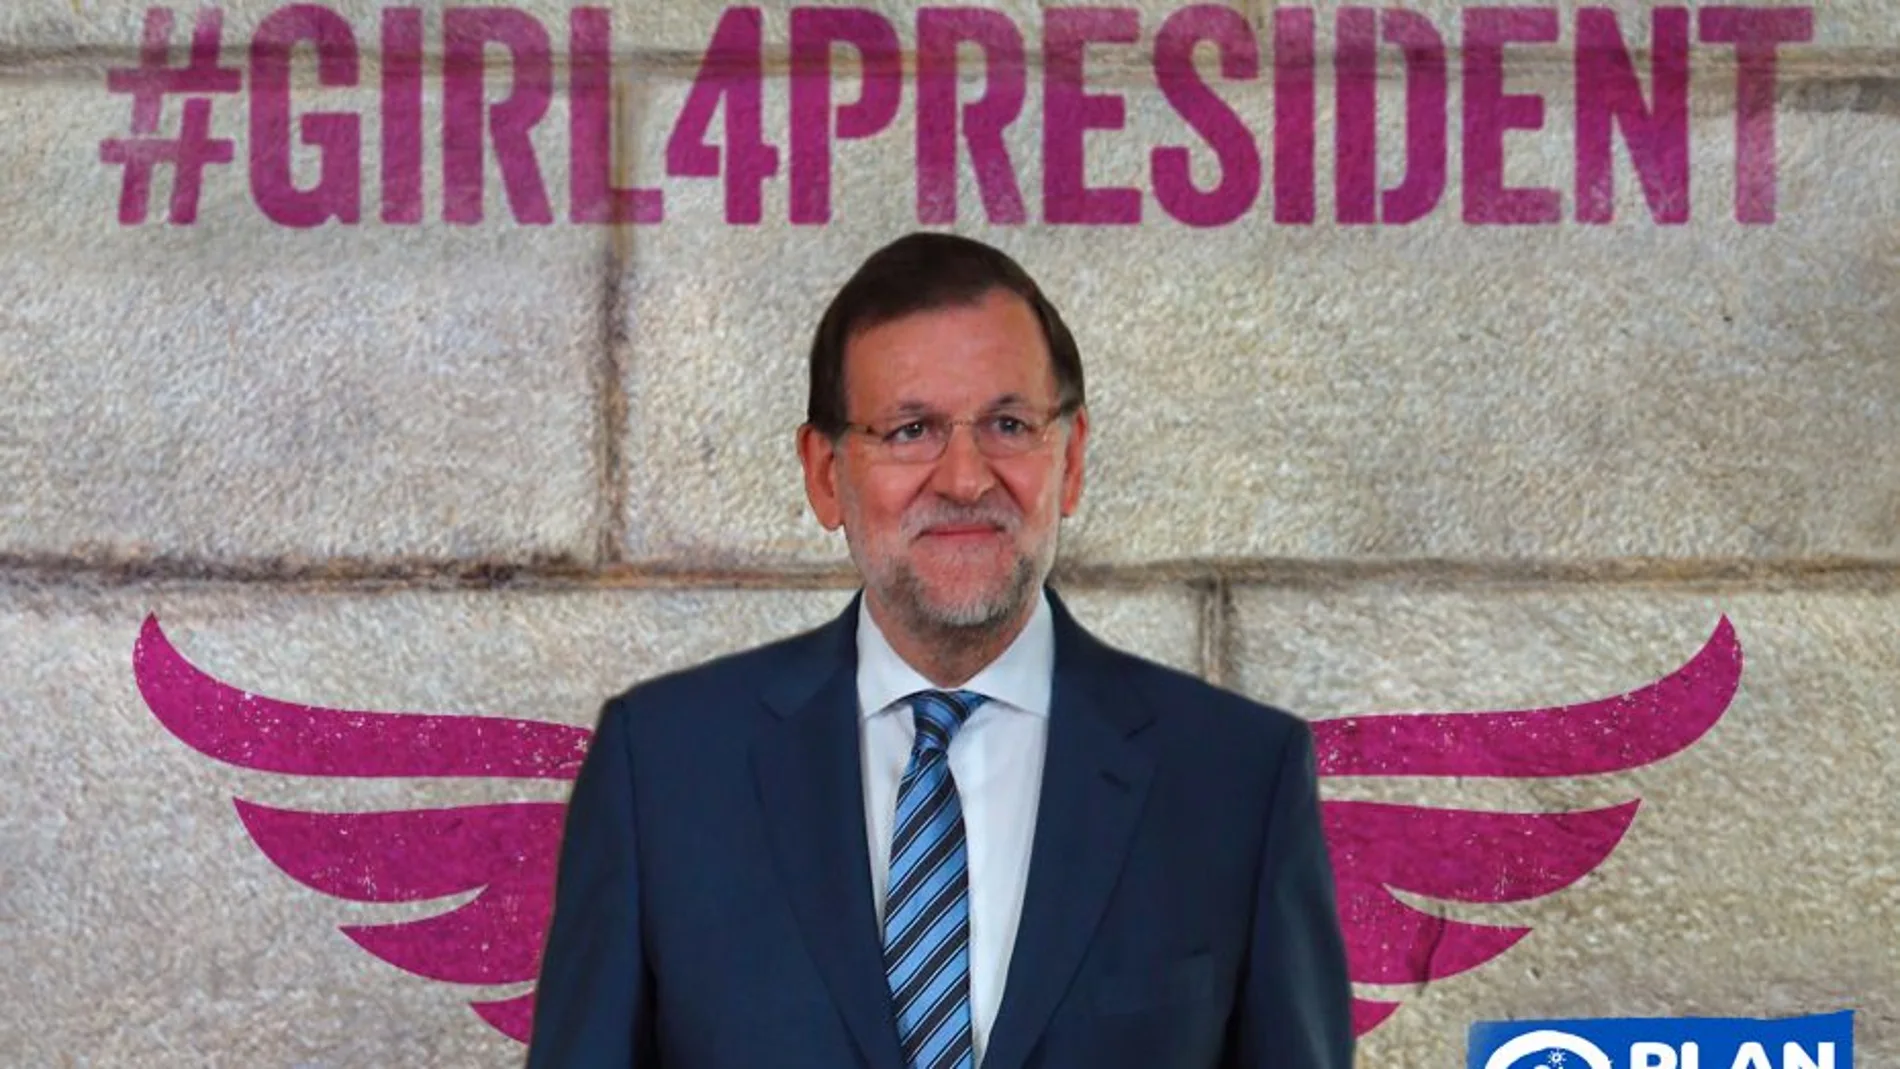 El presidente del Ejecutivo, Mariano Rajoy, se une a la campaña de #Girl4President